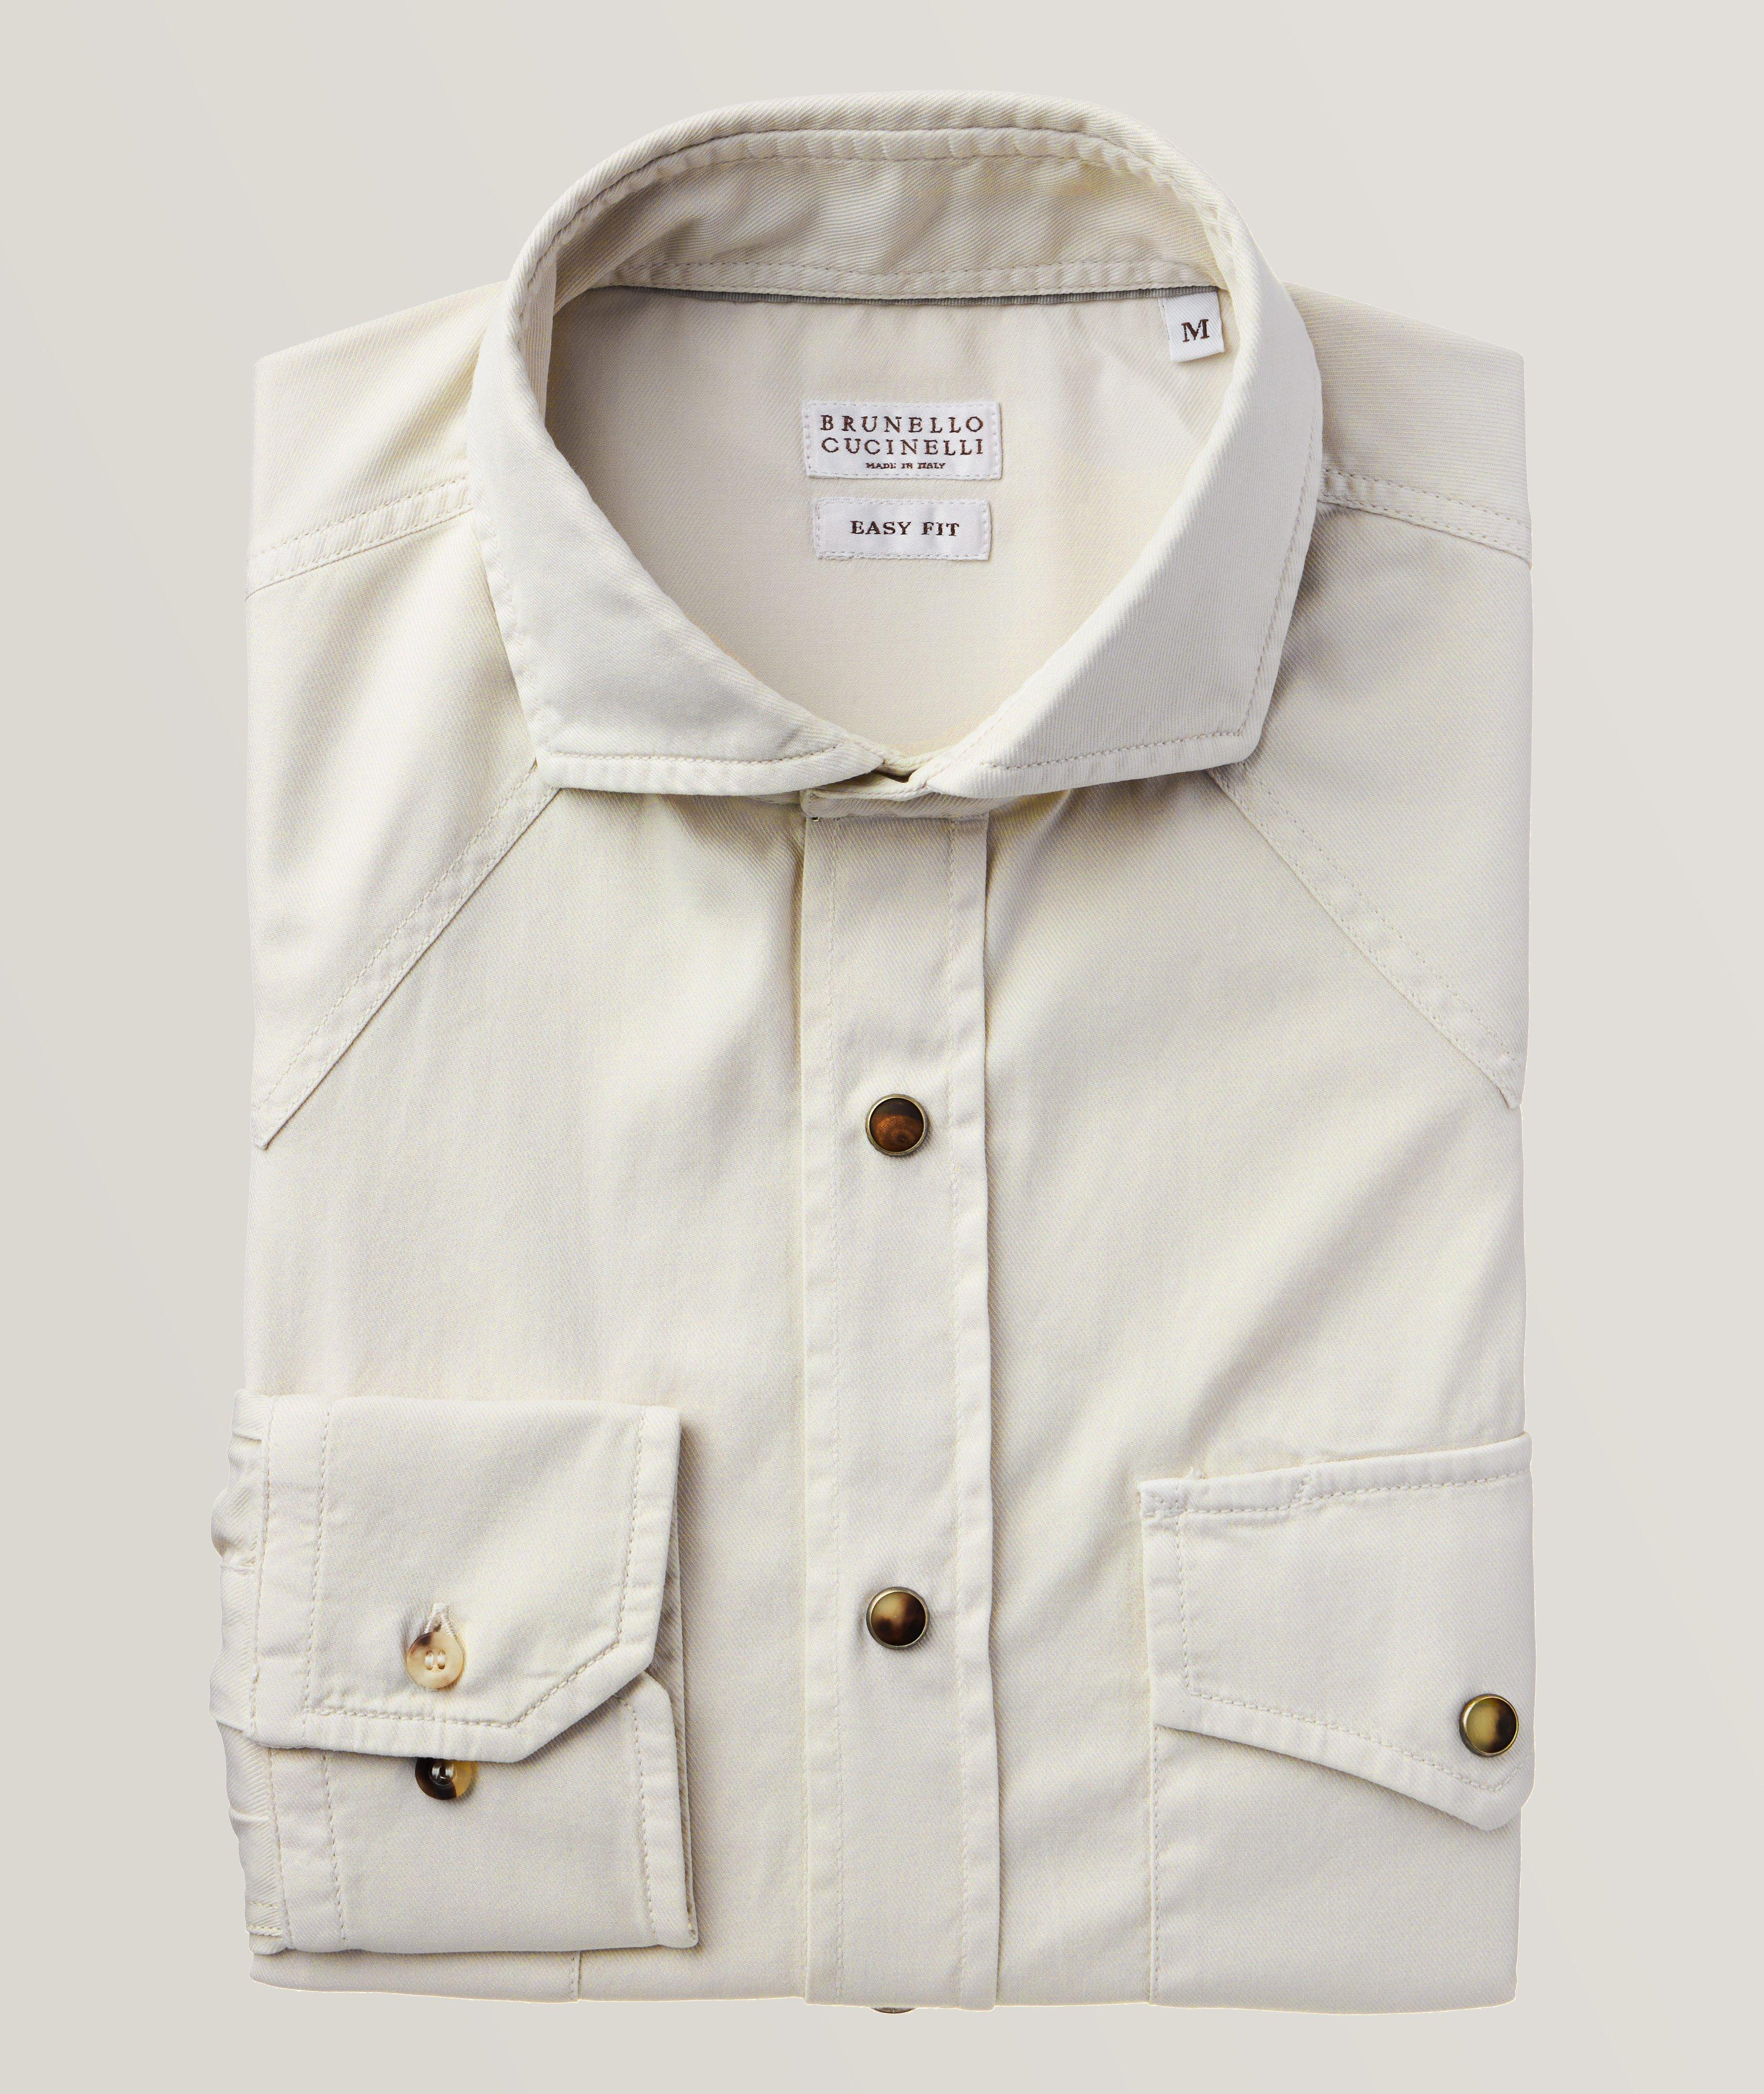 Brunello Cucinelli Western Cotton Twill Overshirt | Sport Shirts ...